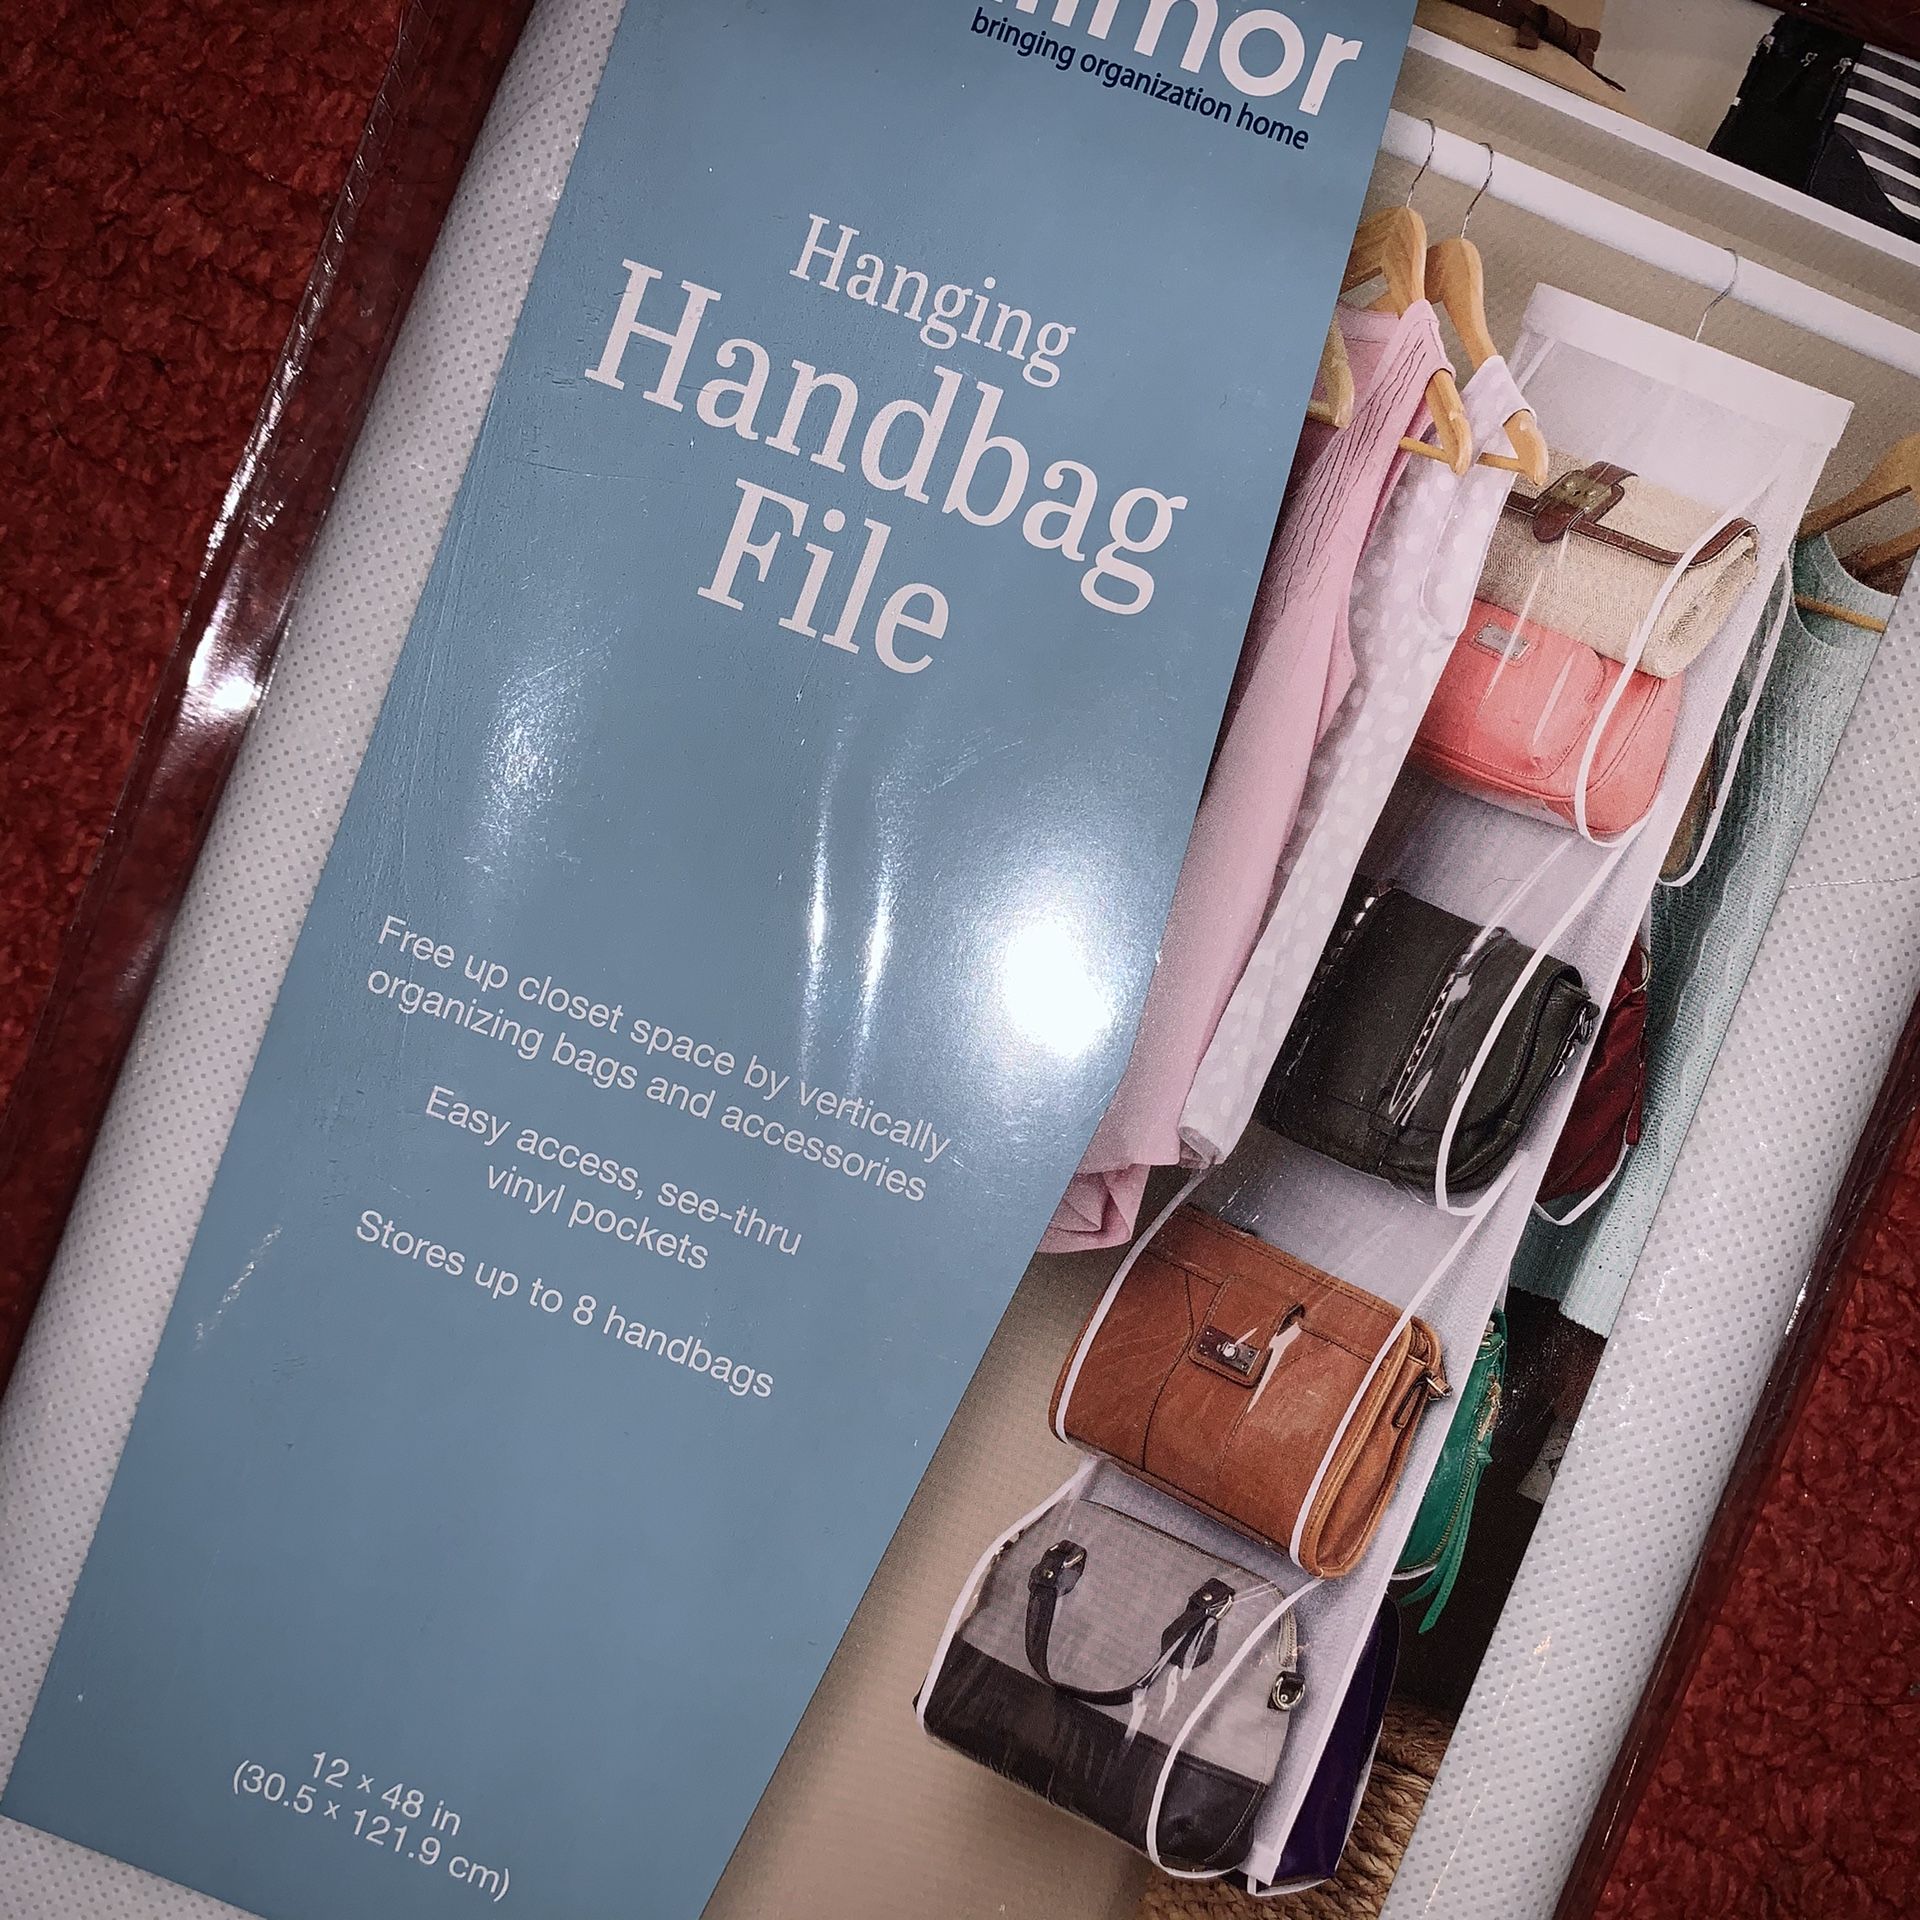 Hanging Handbag/Purse File Organizer for Closet